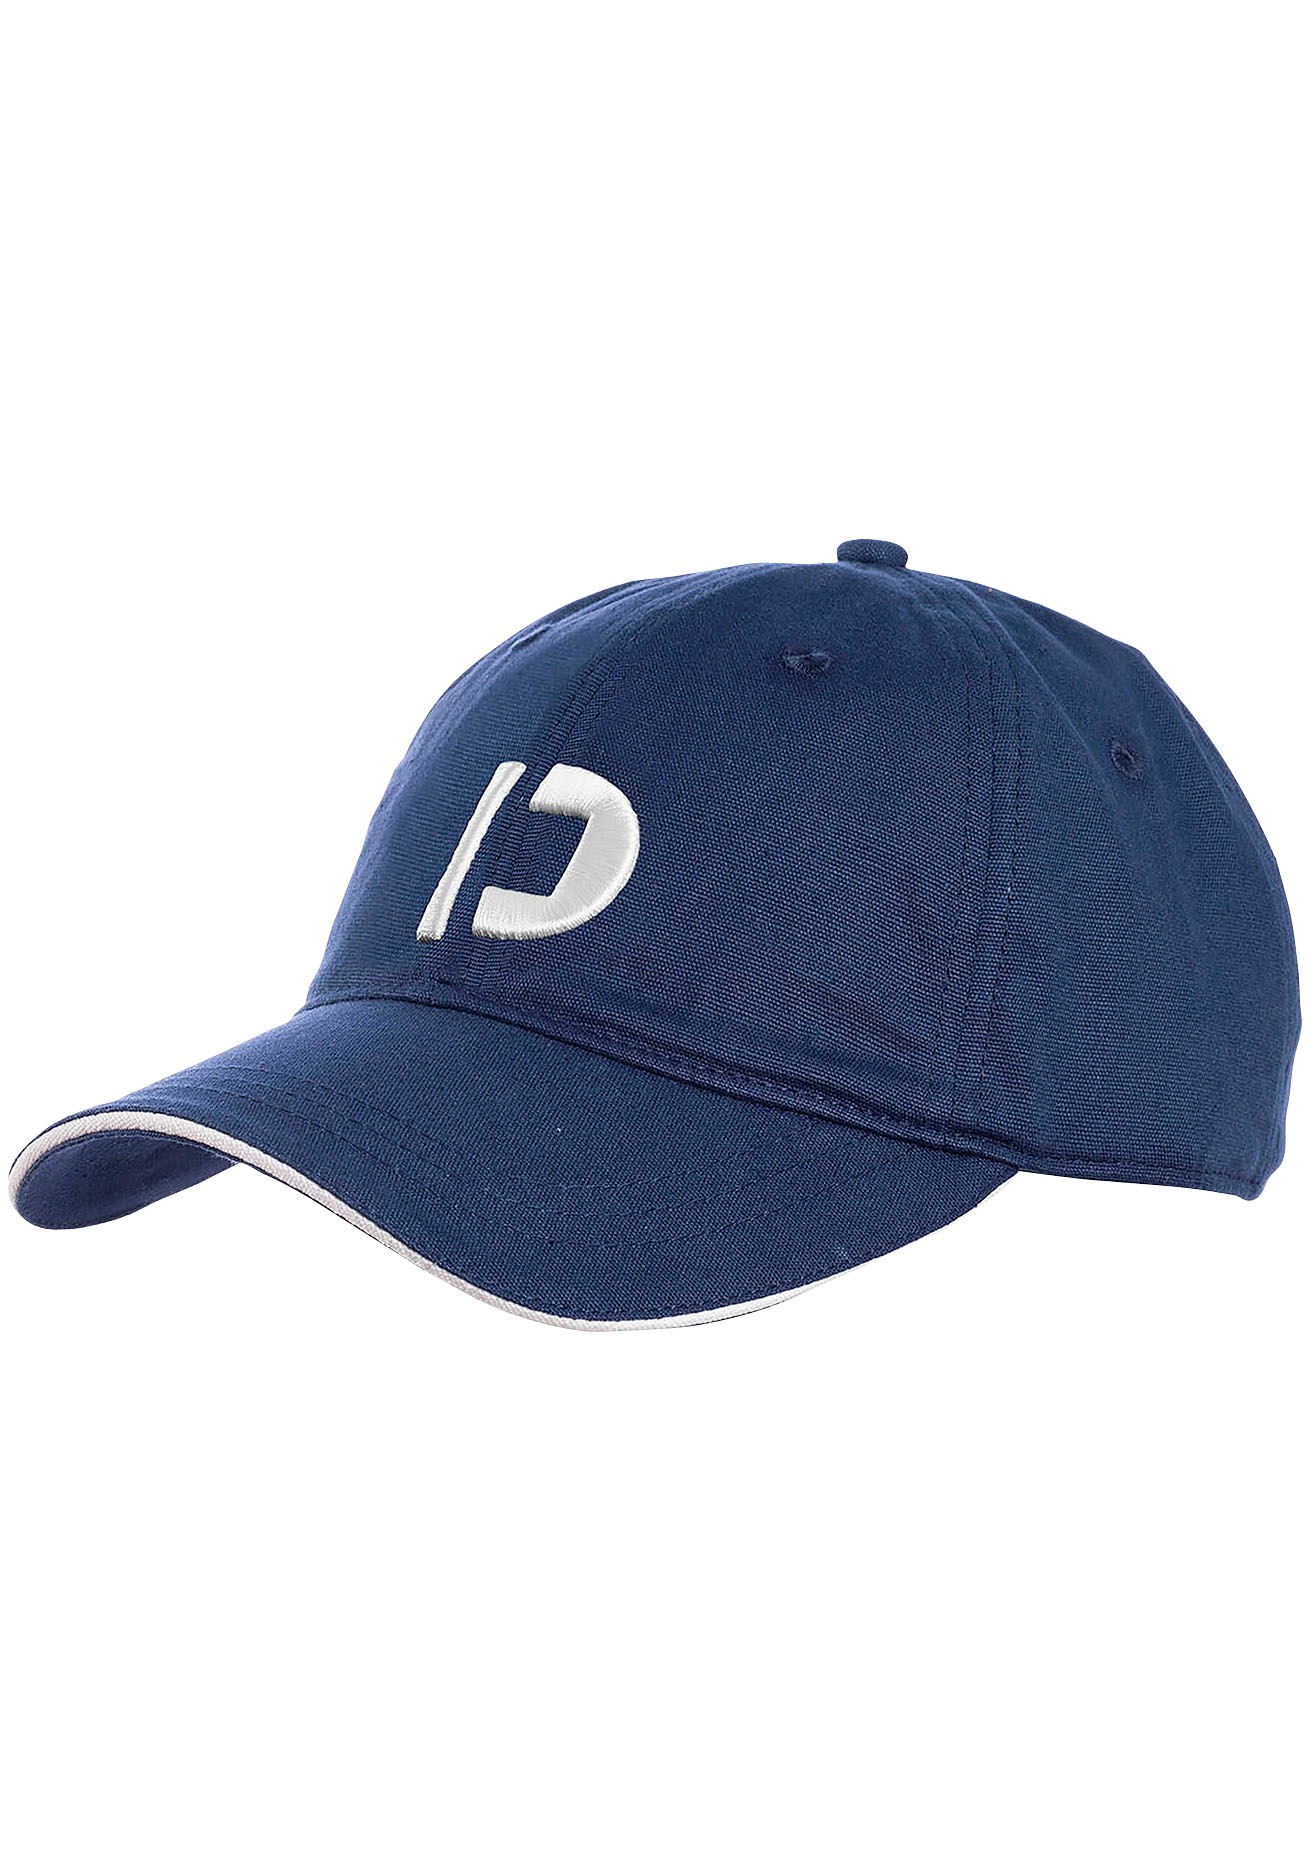 Baseball Caps Herren online kaufen